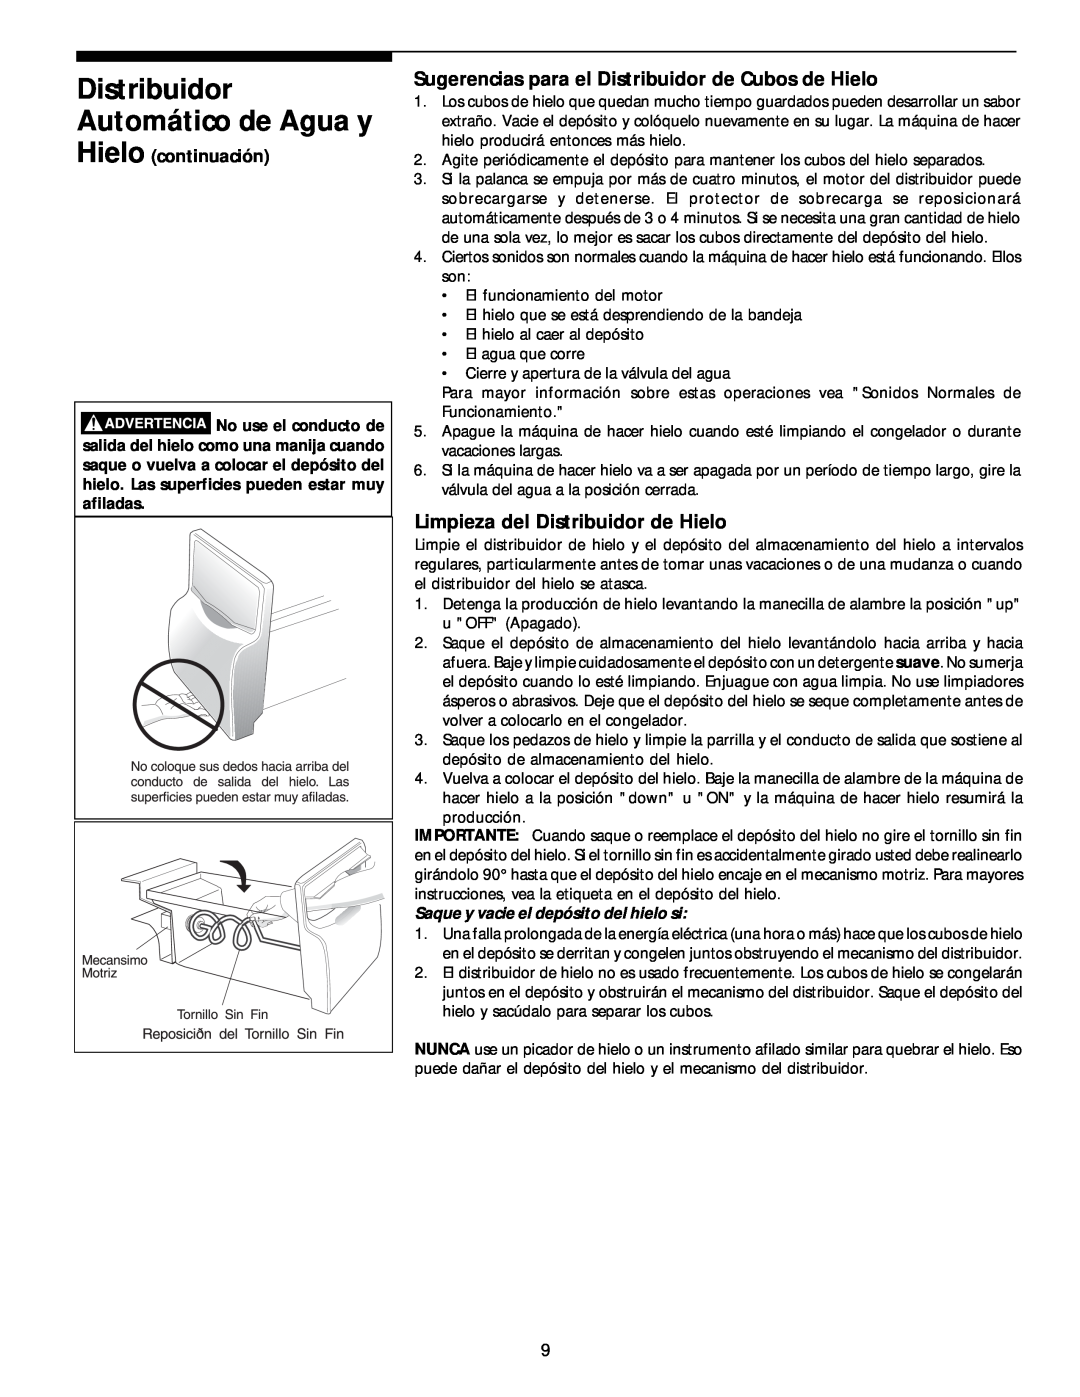 White-Westinghouse 218954301 manual Distribuidor Automático de Agua y, Sugerencias para el Distribuidor de Cubos de Hielo 